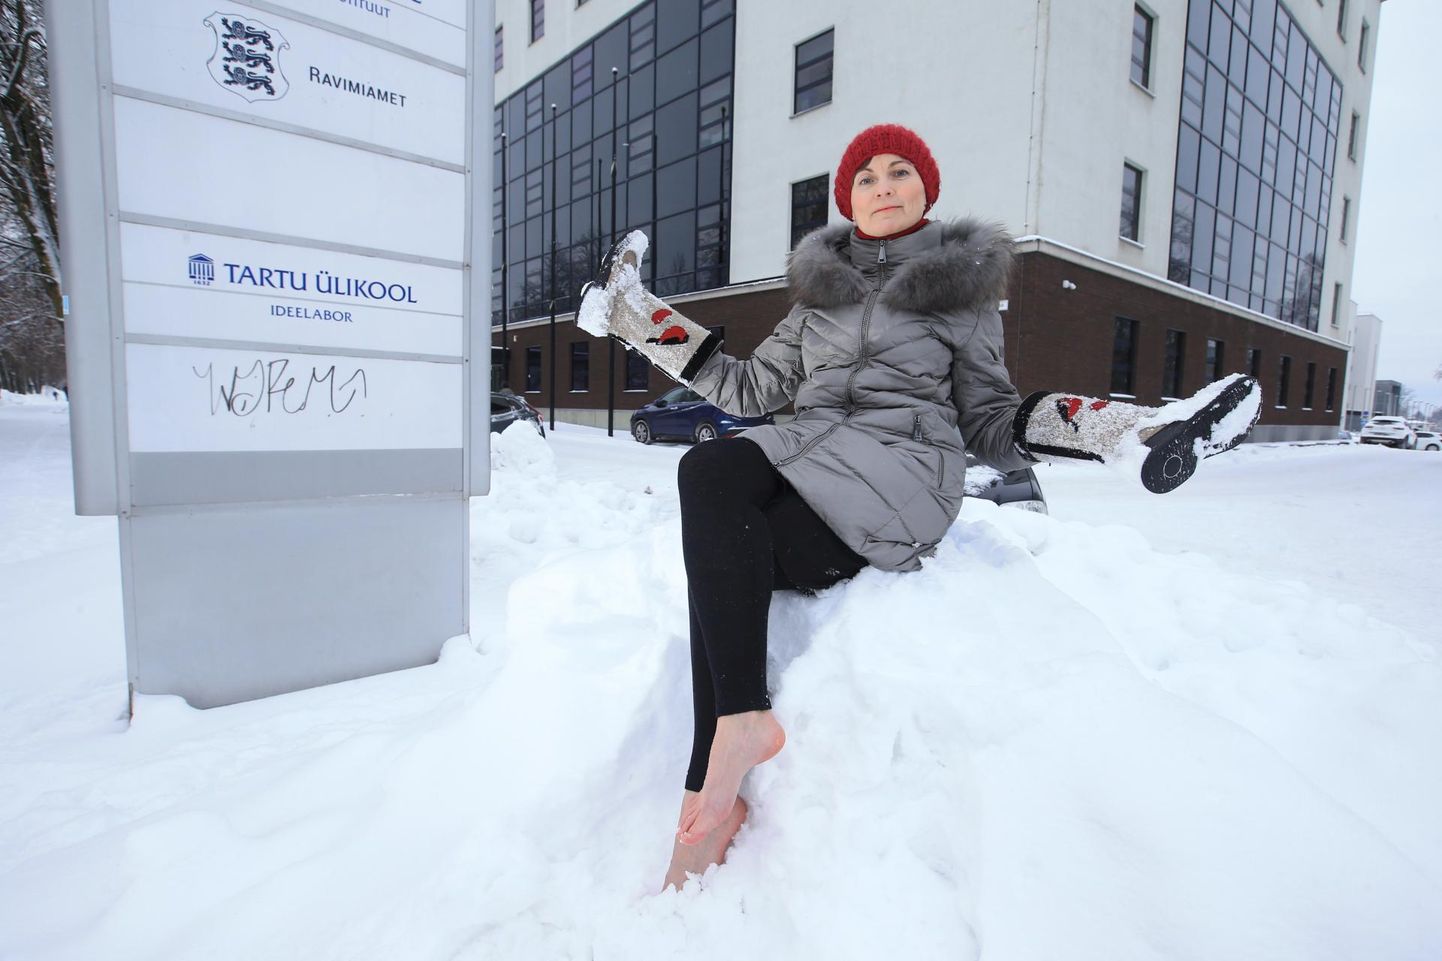 Рийна Кютт, педагог с двадцатилетним стажем, босиком перед зданием Департамента здоровья в Тарту. Одним из признаков многих нарушений здоровья, возникших после укола корона-вакцины, стала потеря чувствительности к холоду в ногах.